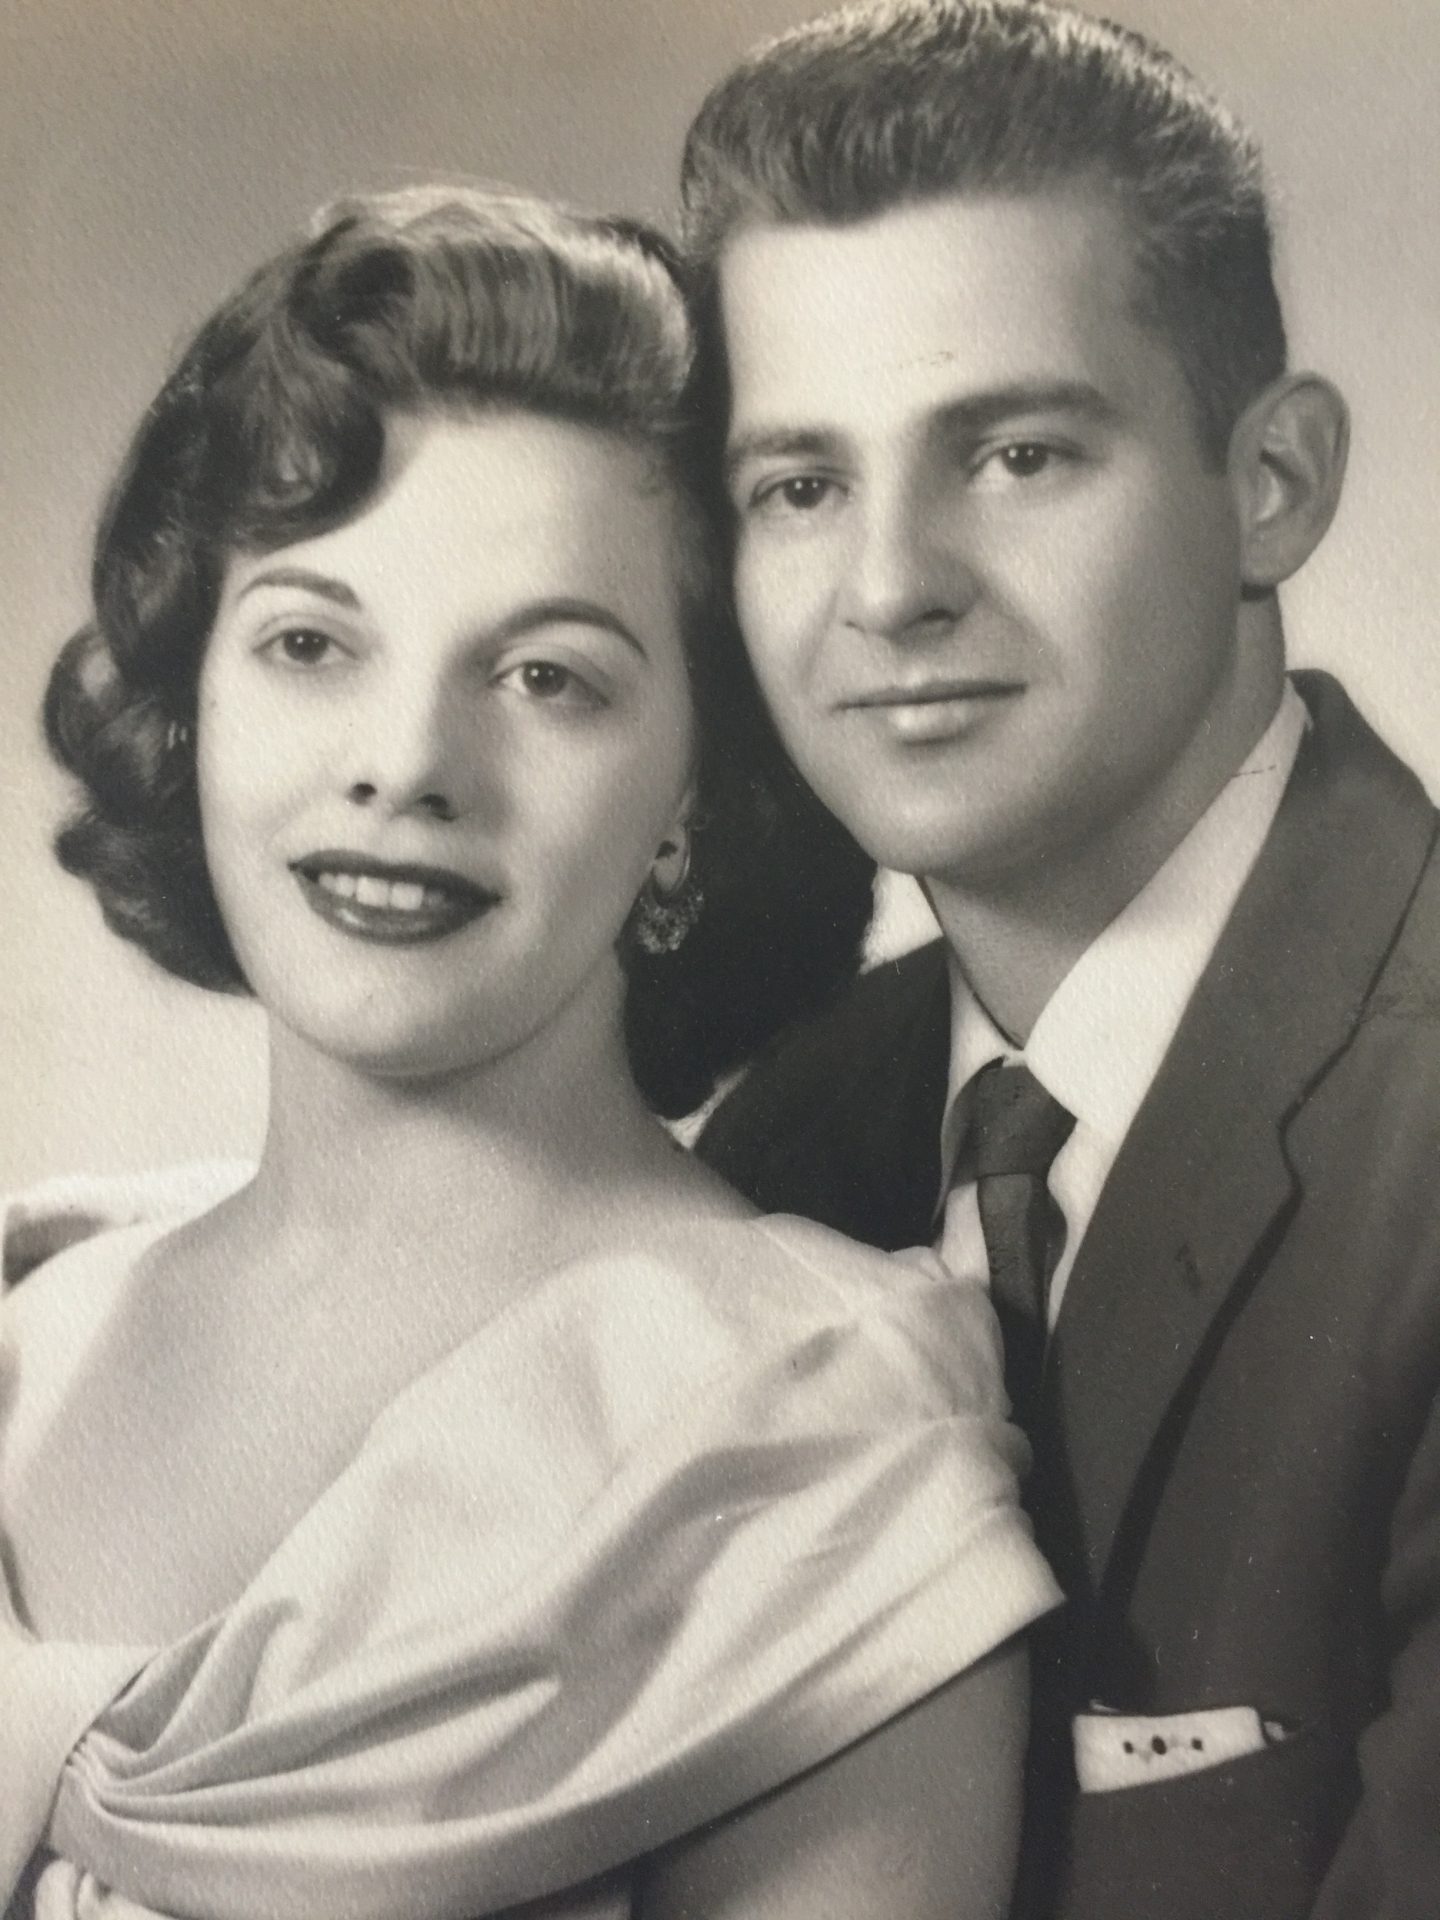 Willie & Elaine 1954